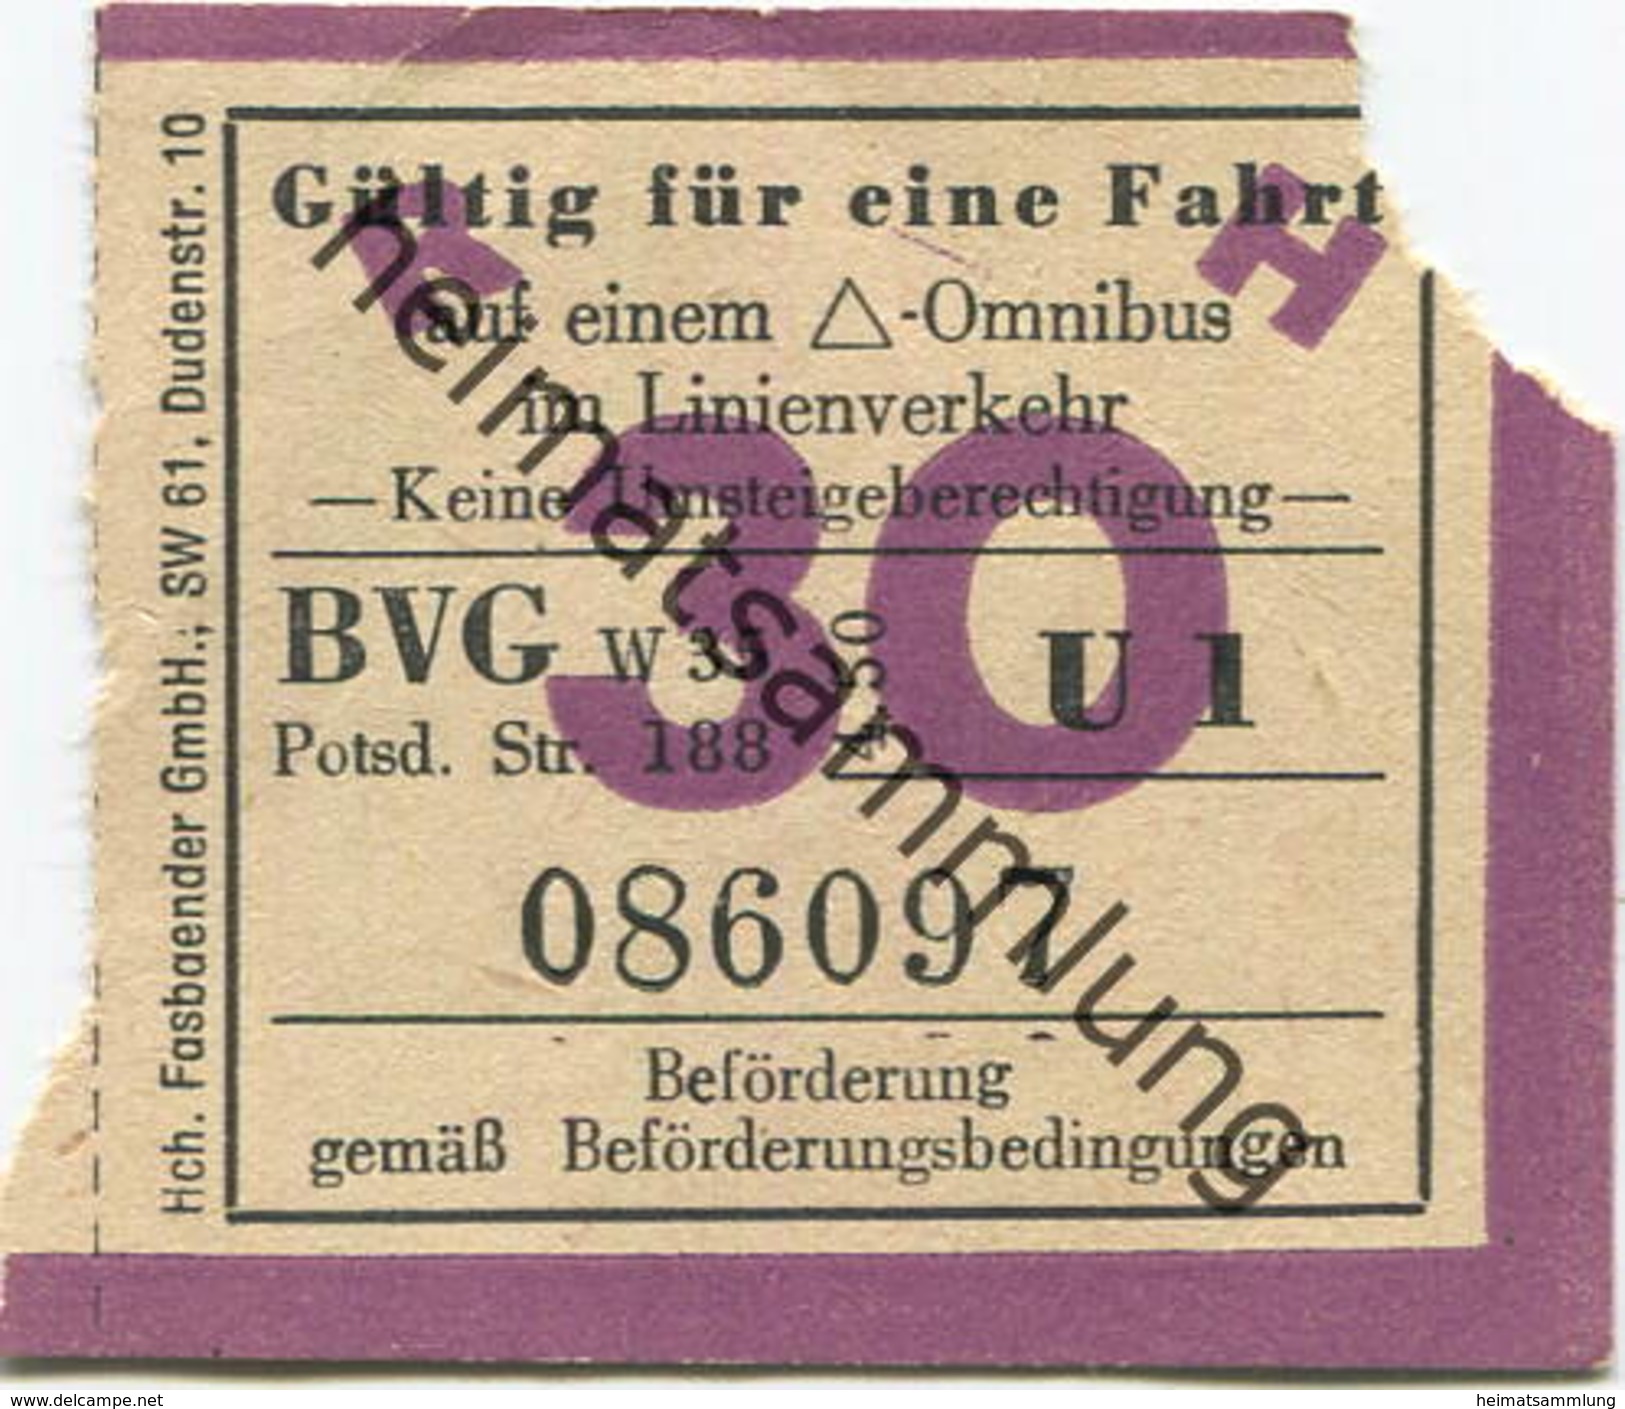 Deutschland - Berlin - BVG - Berlin Potsdamer Str. 188 - Fahrschein 1950 - Gültig Für Eine Fahrt Auf Einem Dreieck-Autob - Europe